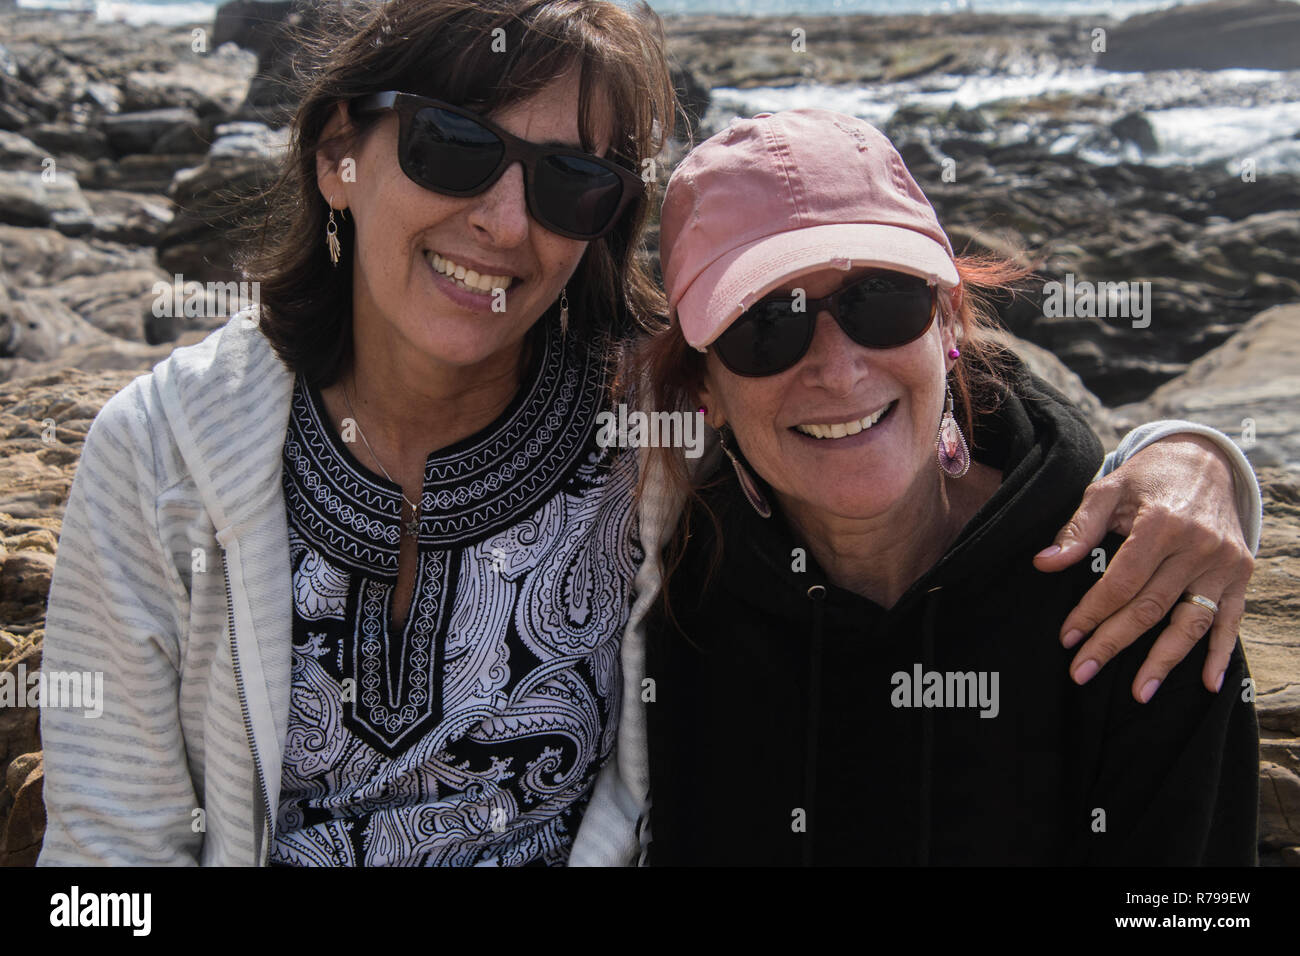 Dos mujeres caucásicas mujer sonriente baby boomers sentados juntos en las rocas a la orilla del océano Foto de stock